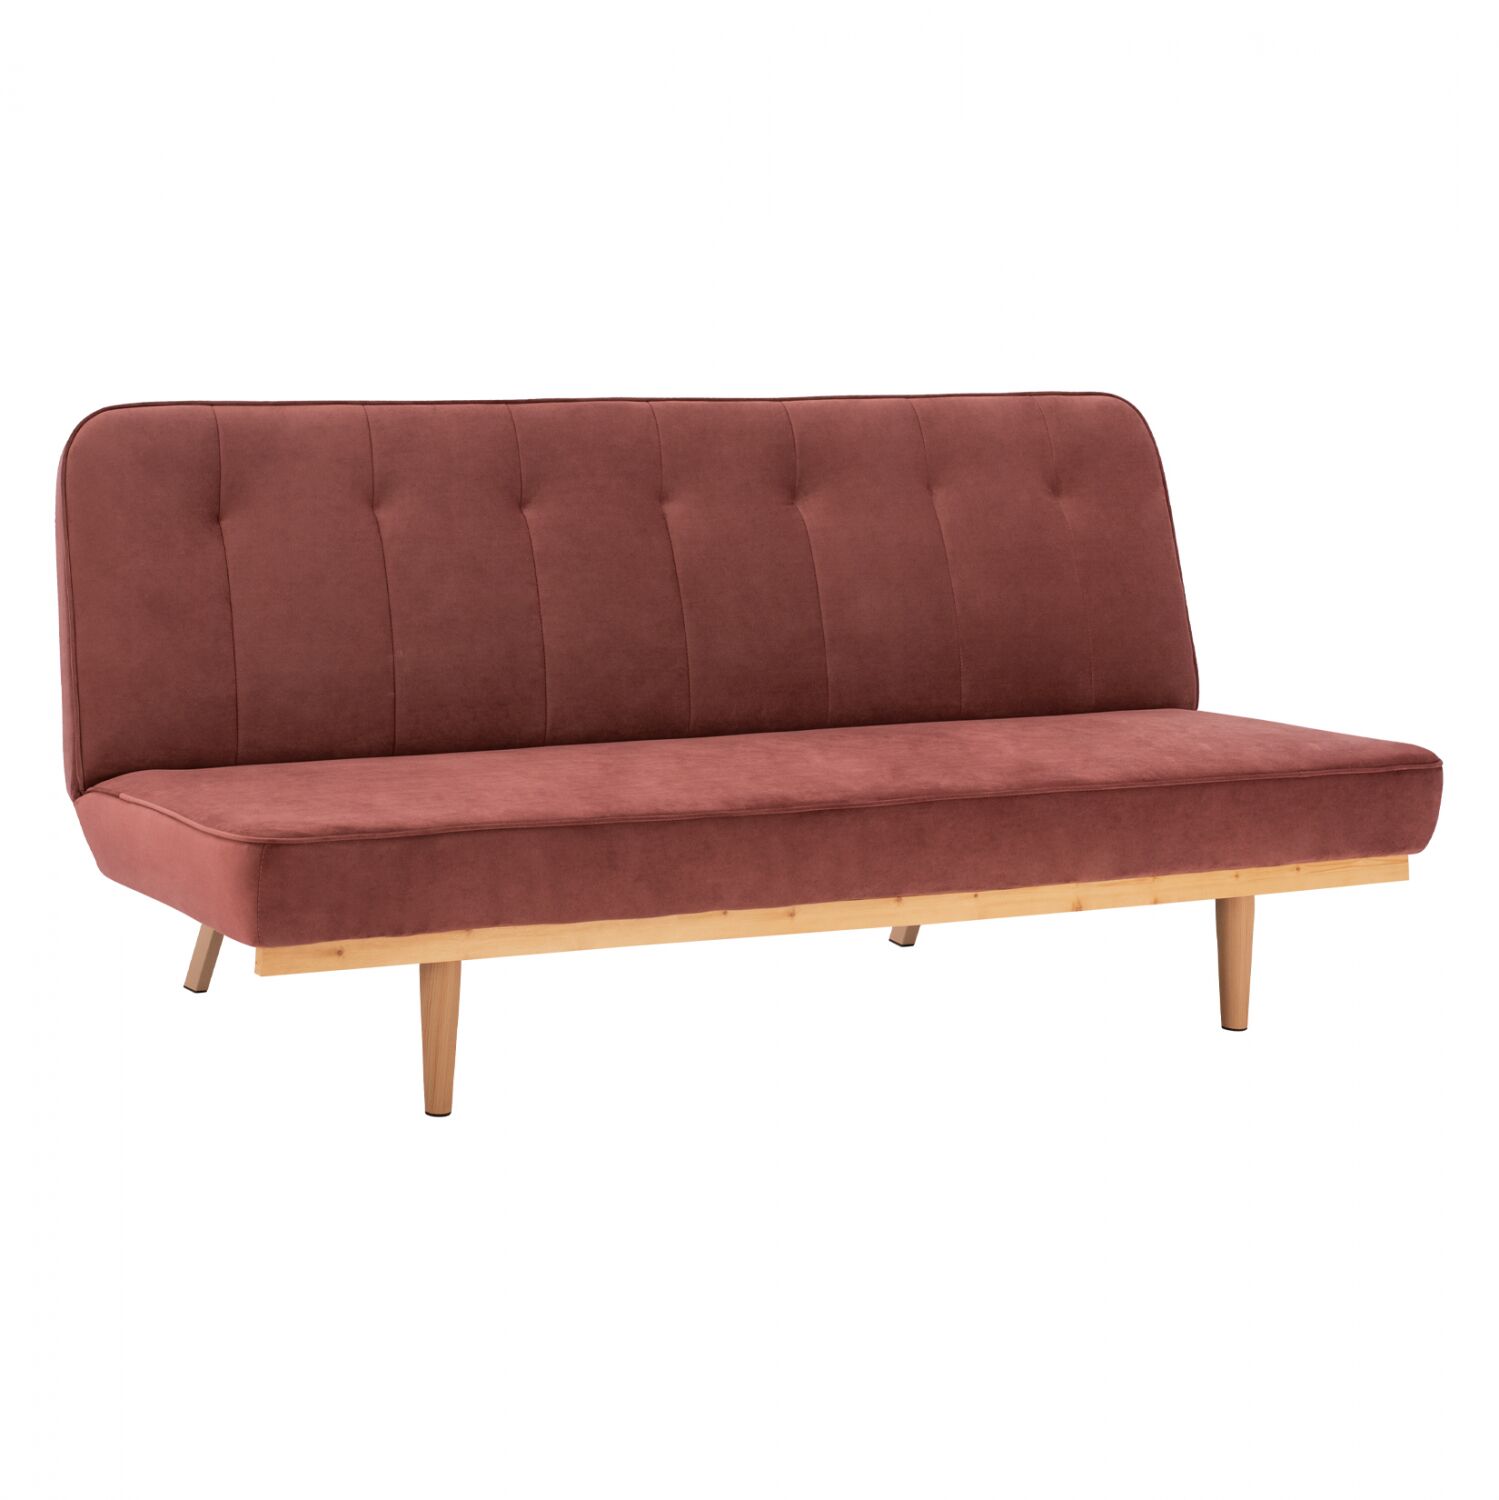 Sofa Bed 3seater from velvet rotten apple HM3168.02 193x85x88cm